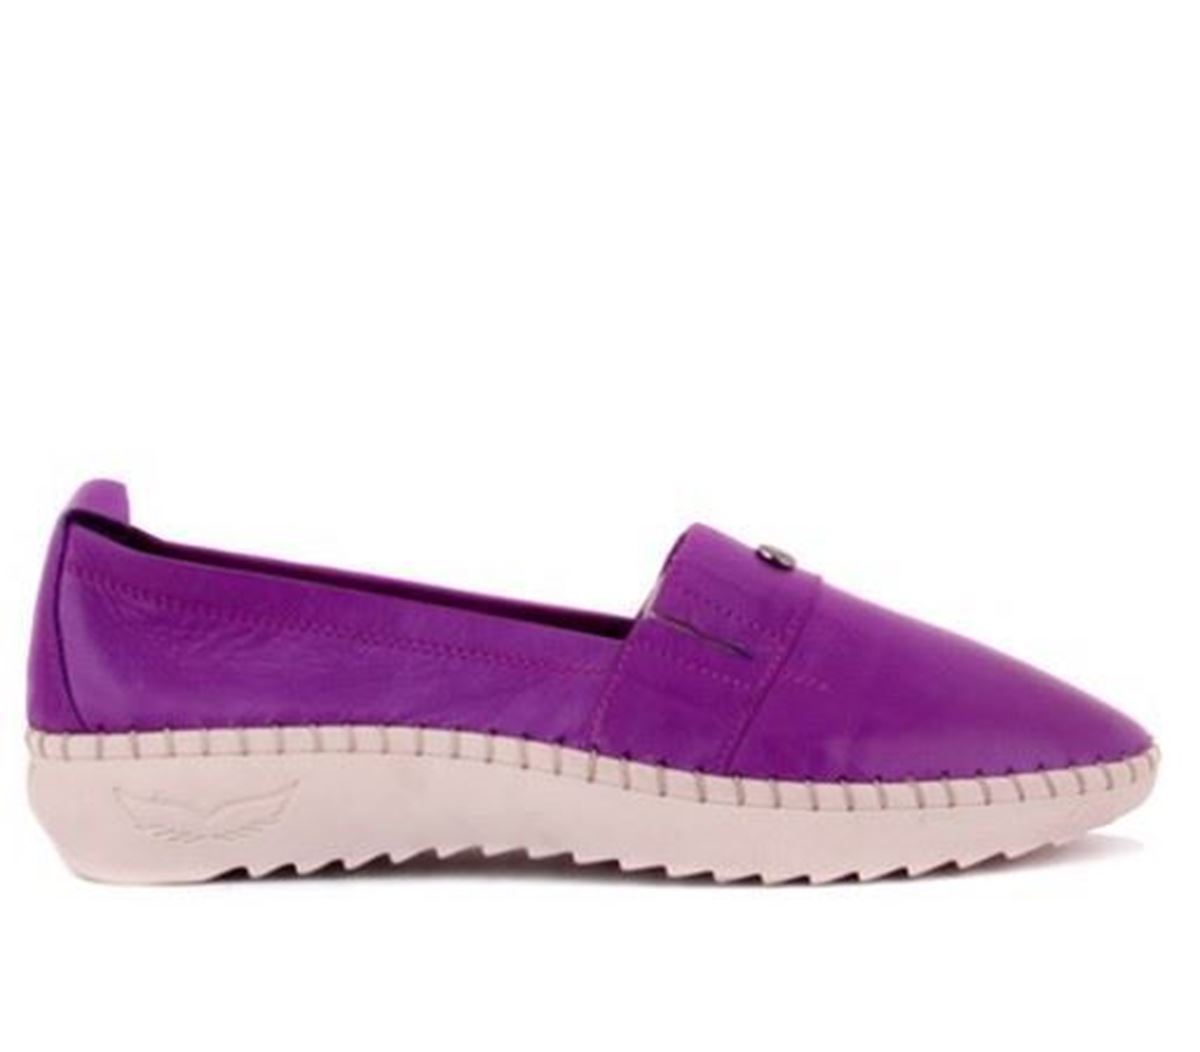 Sail Lakers - Mor Deri Kadın Günlük Ayakkabı resmi